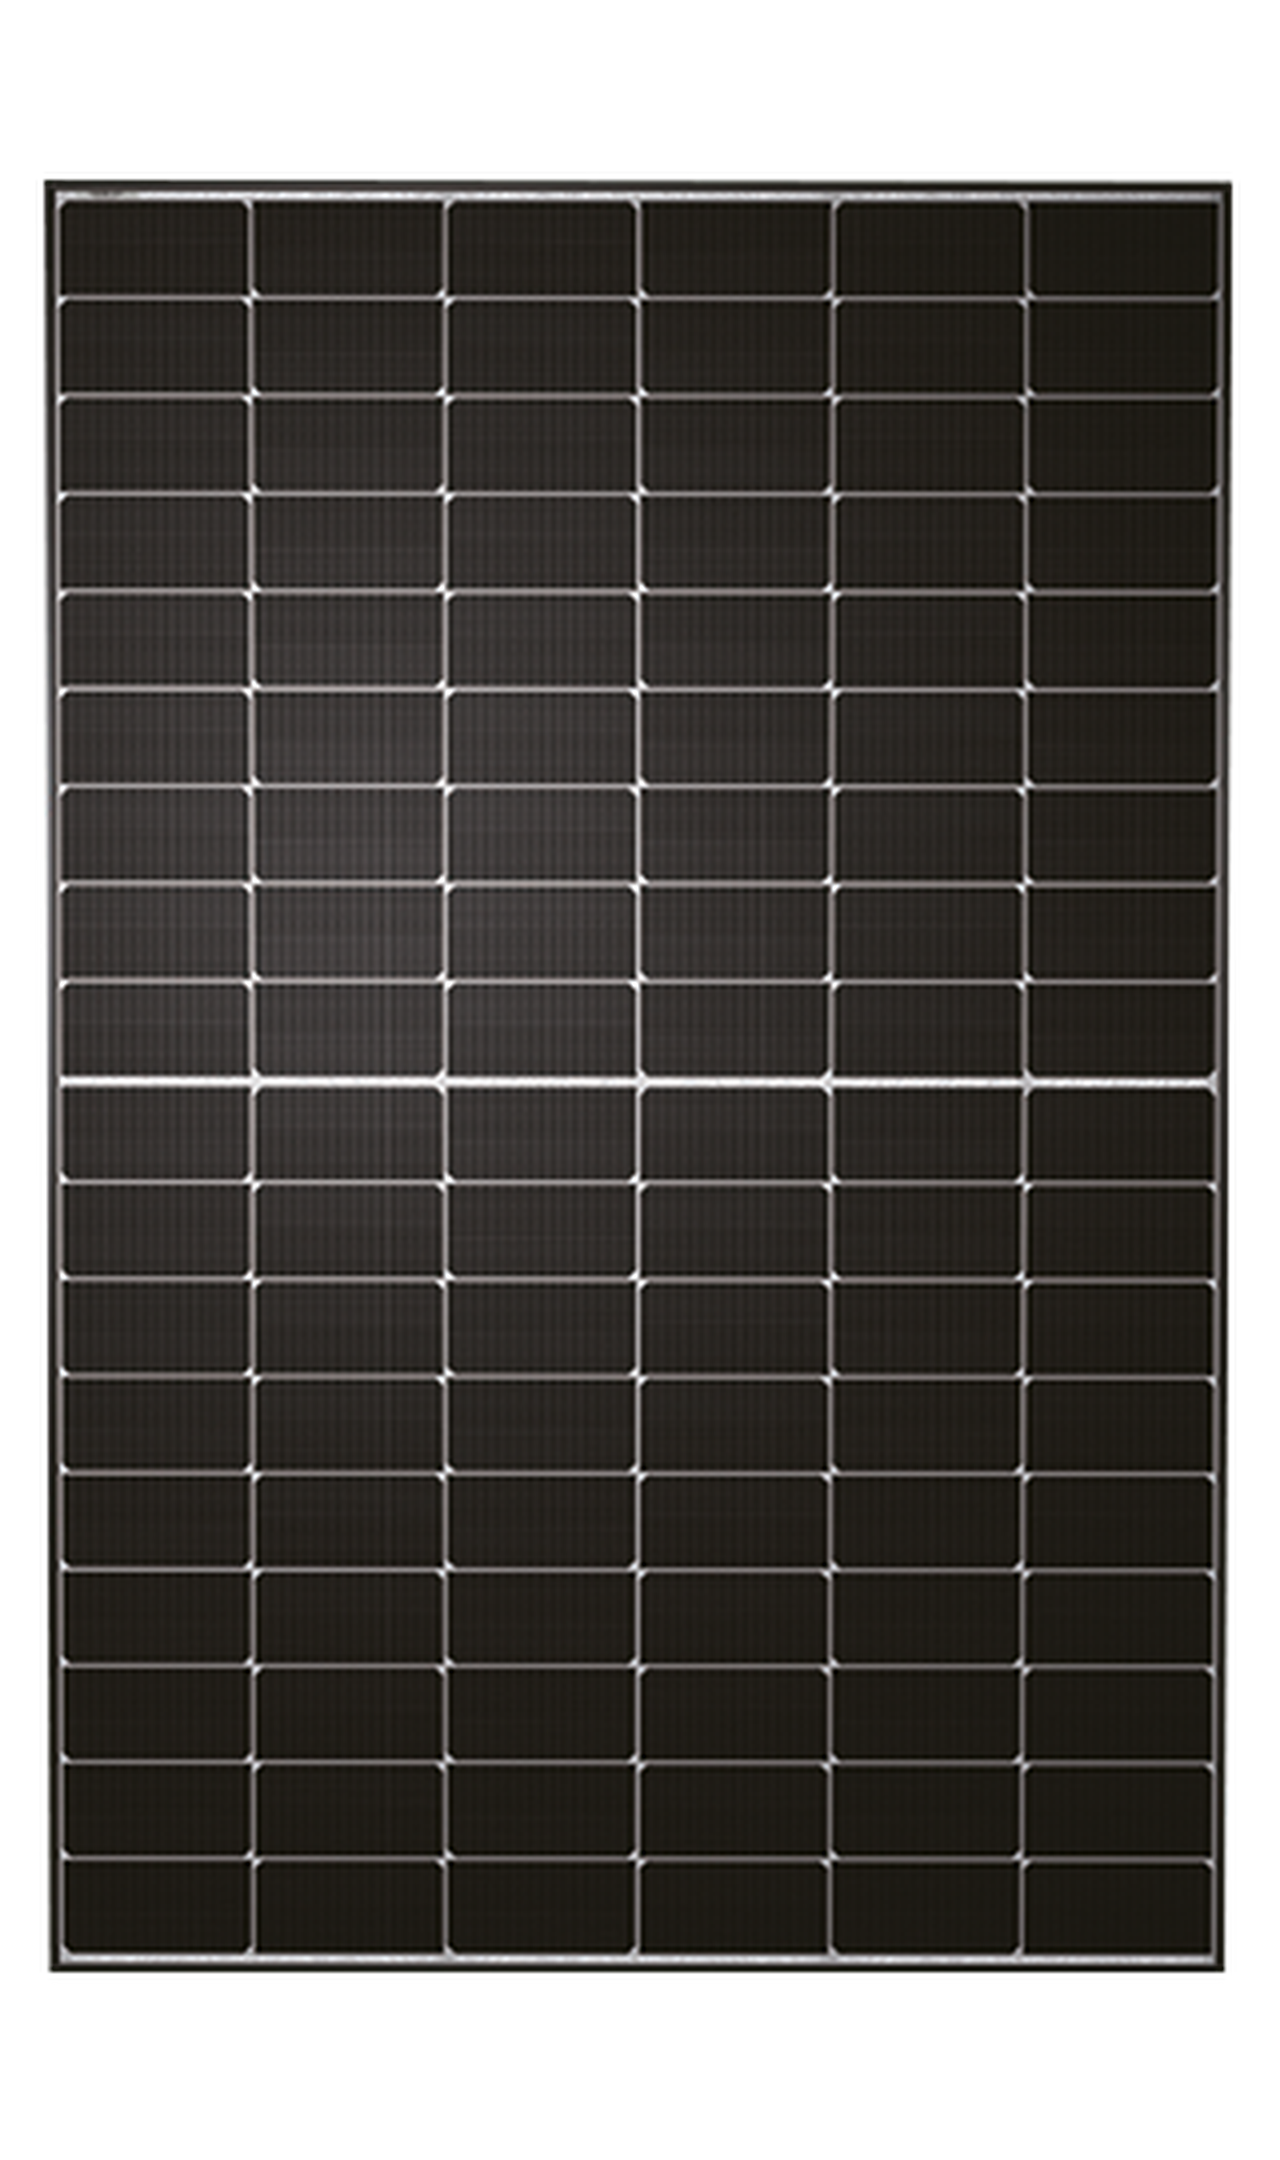 TWMND-54HS440 — EVO2, Rahmen schwarz, Front weiß